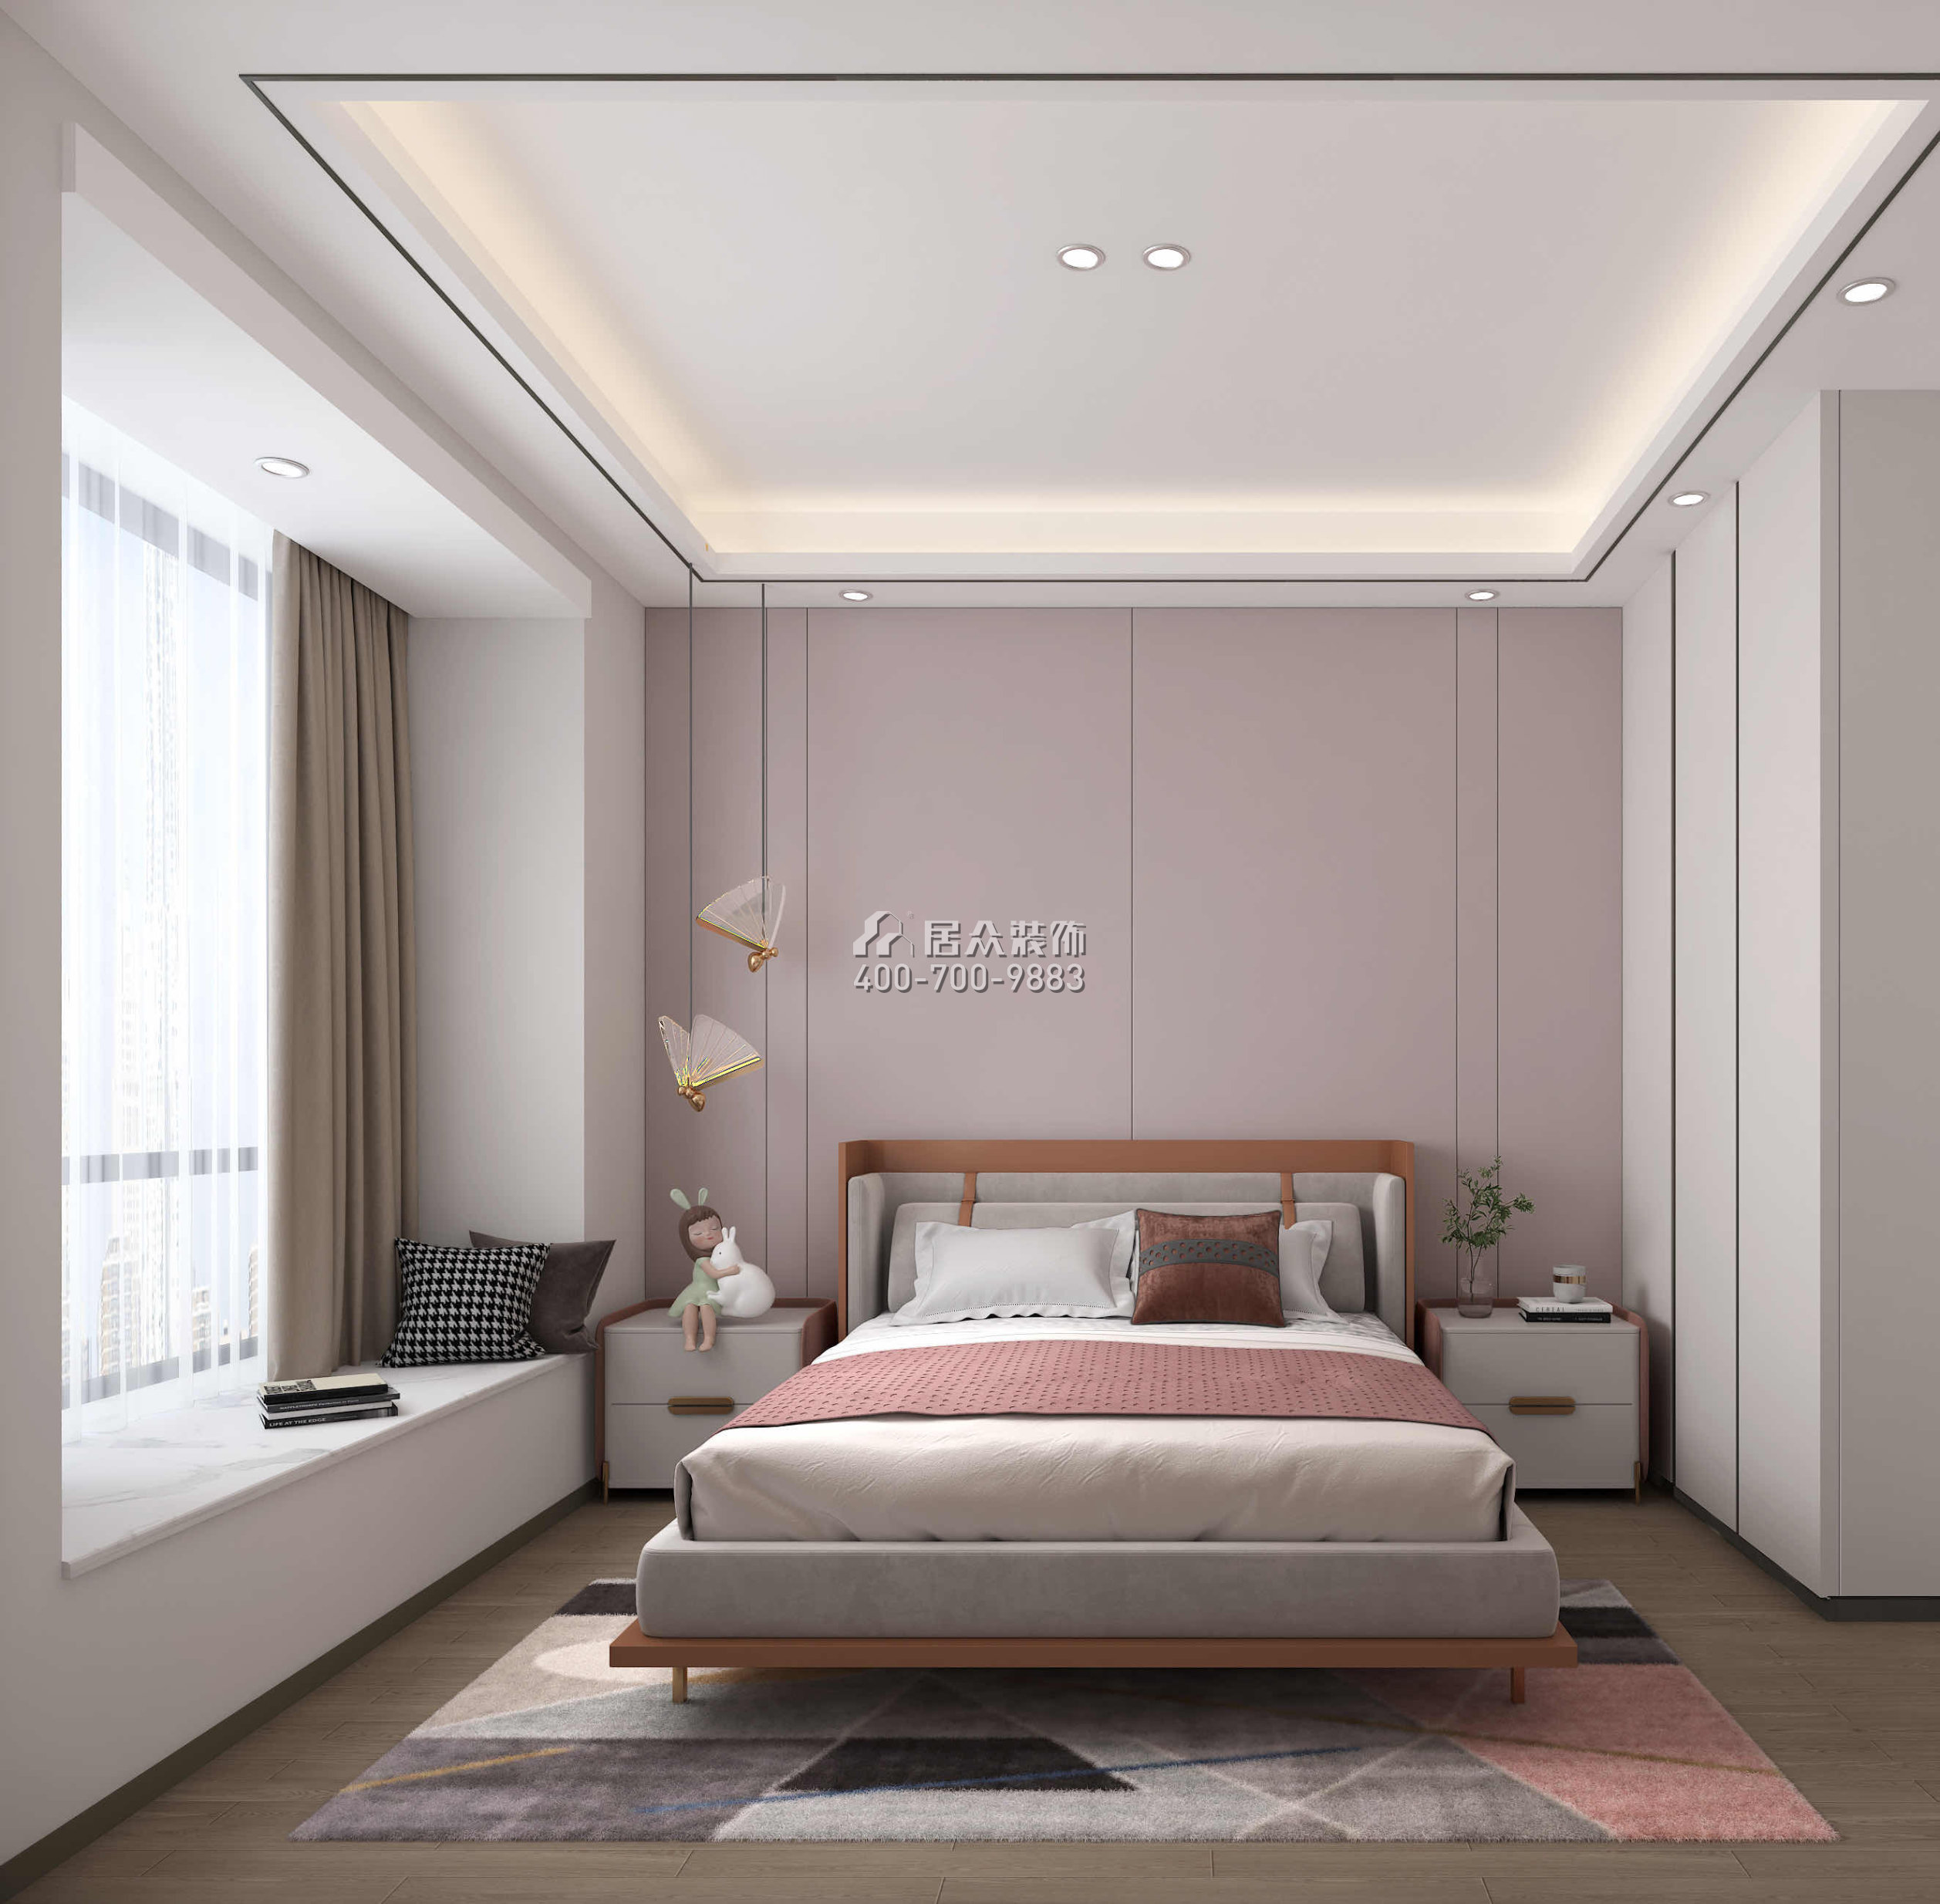 壹方中心175平方米現代簡約風格平層戶型臥室裝修效果圖